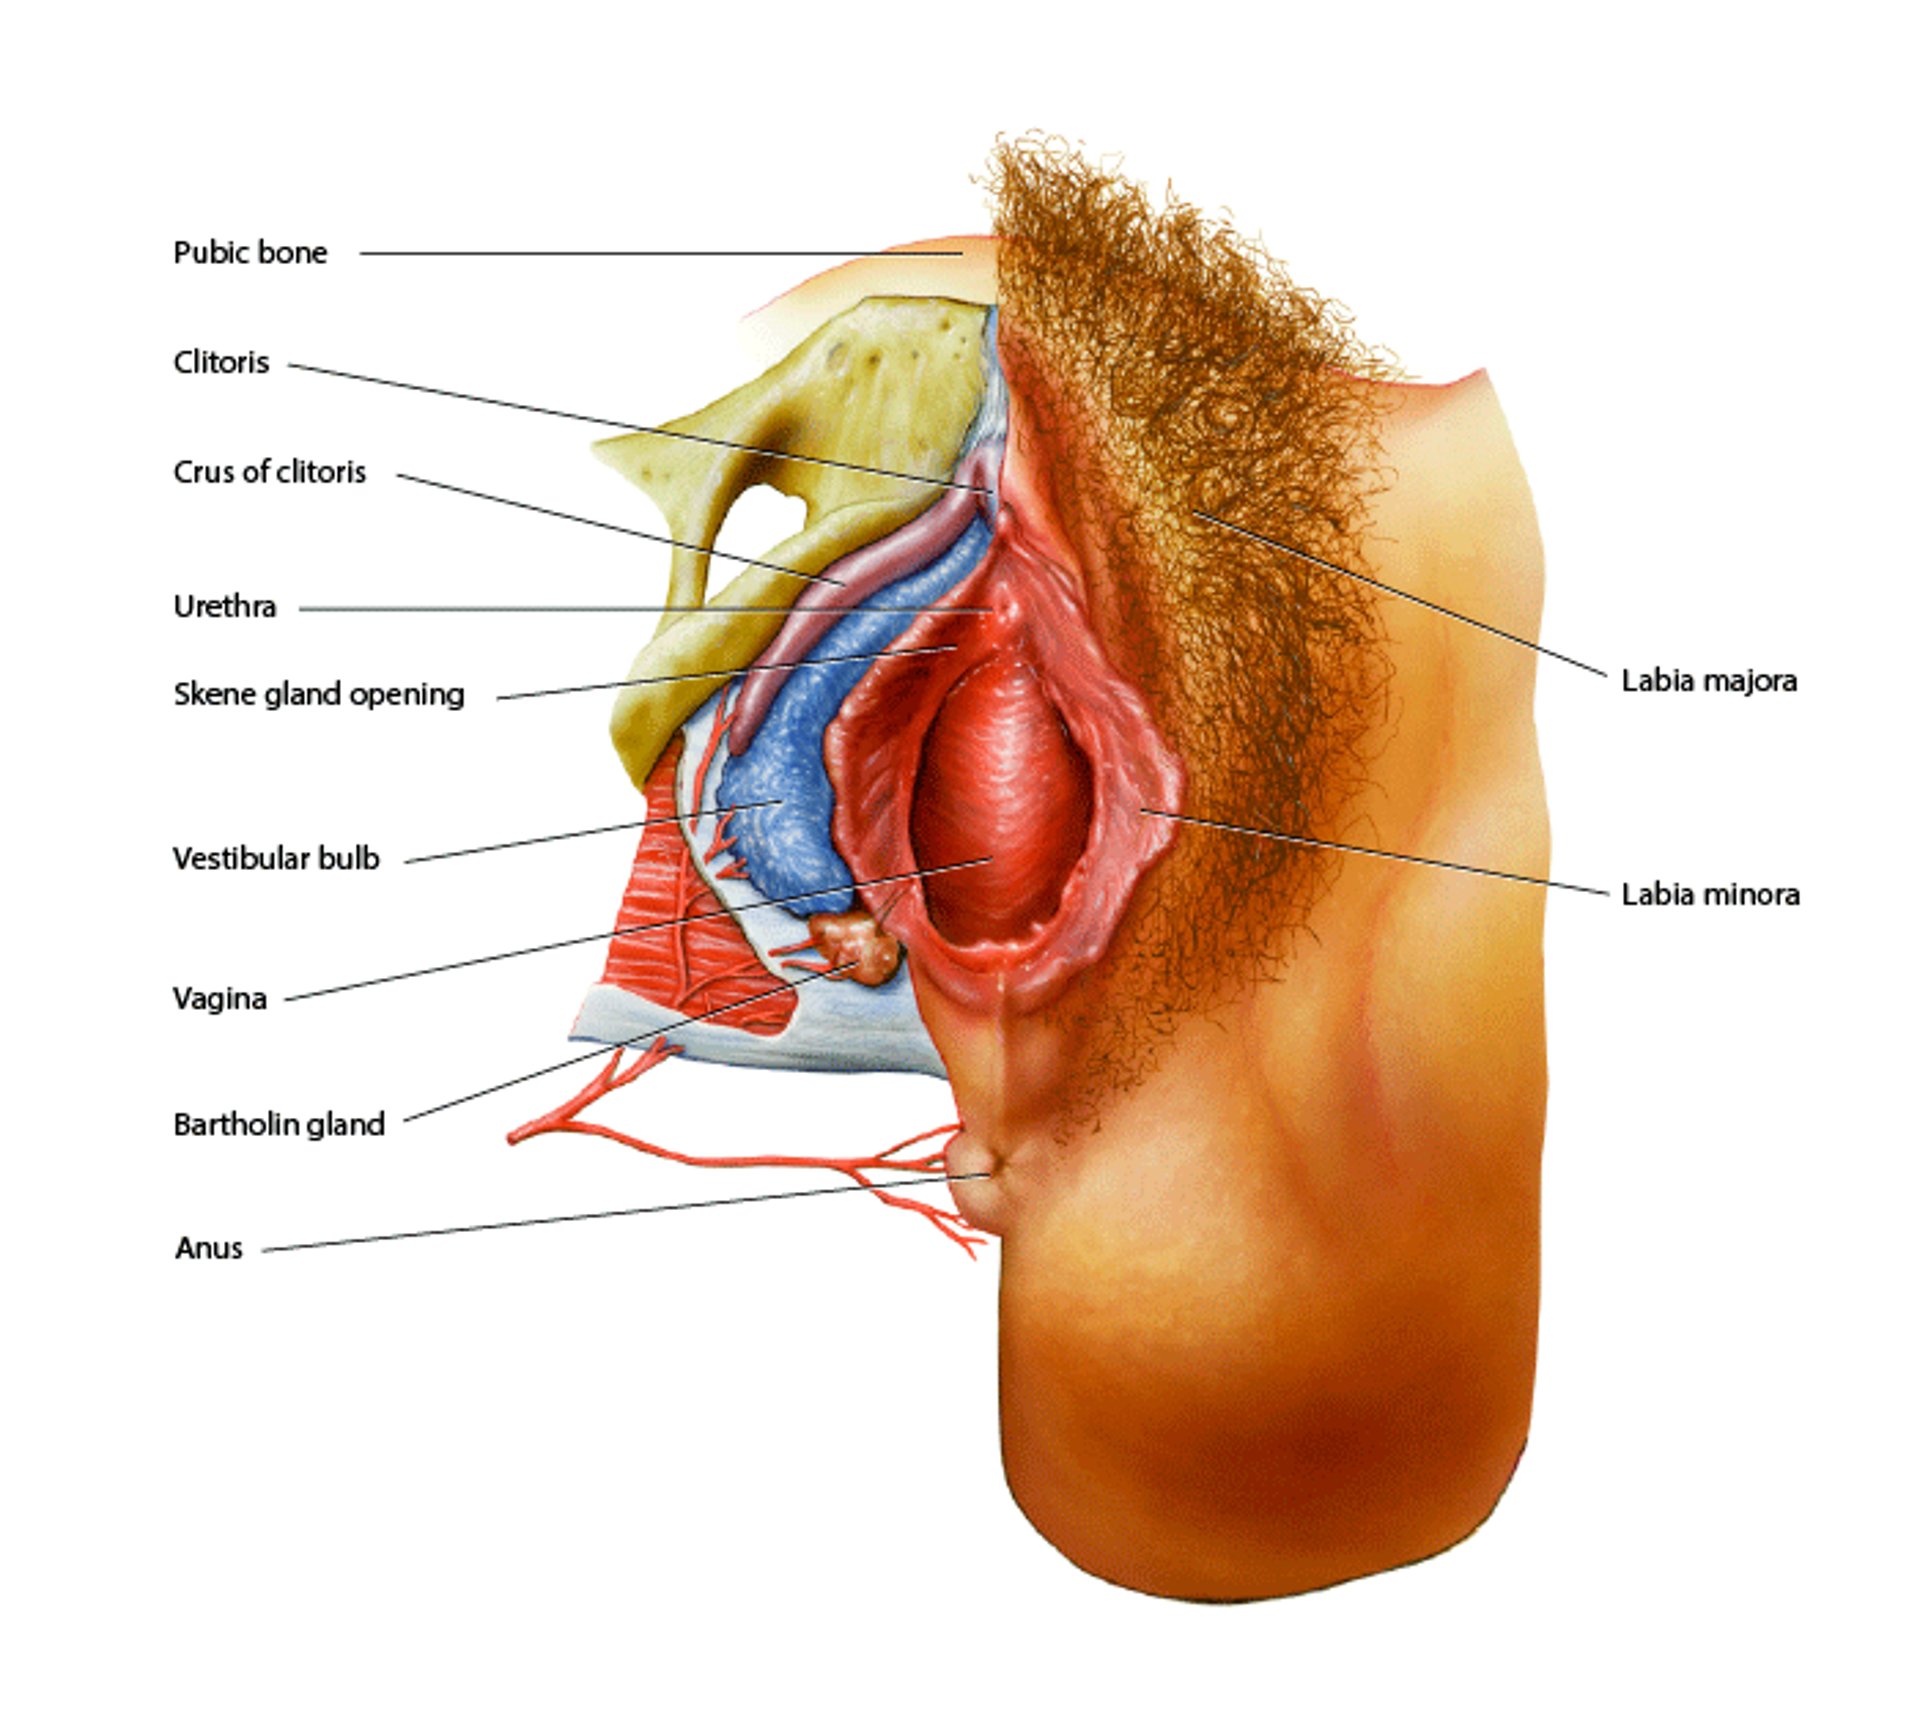 Anatomia genital feminina externa